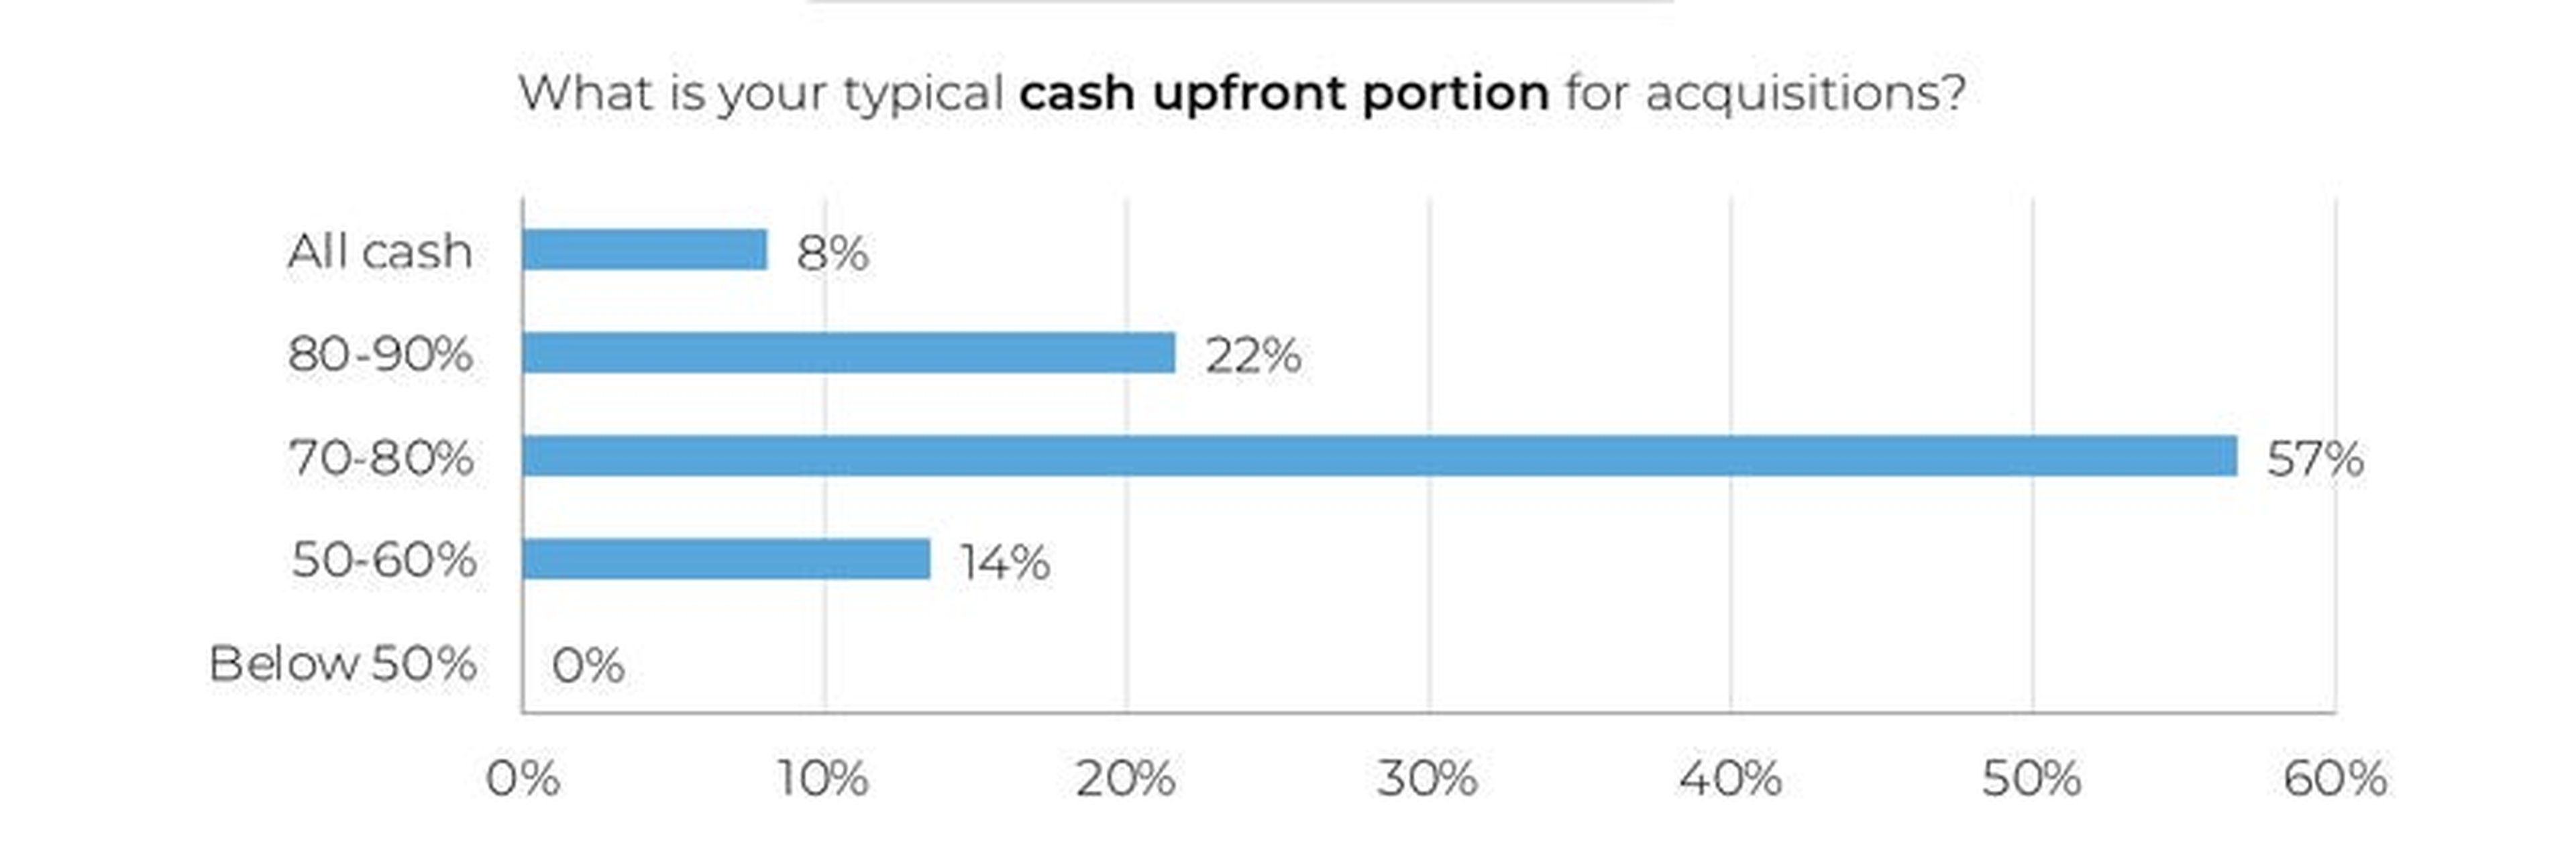 La encuesta pregunta qué porcentaje del dinero acordado pagan los agregadores en el momento de la compra.